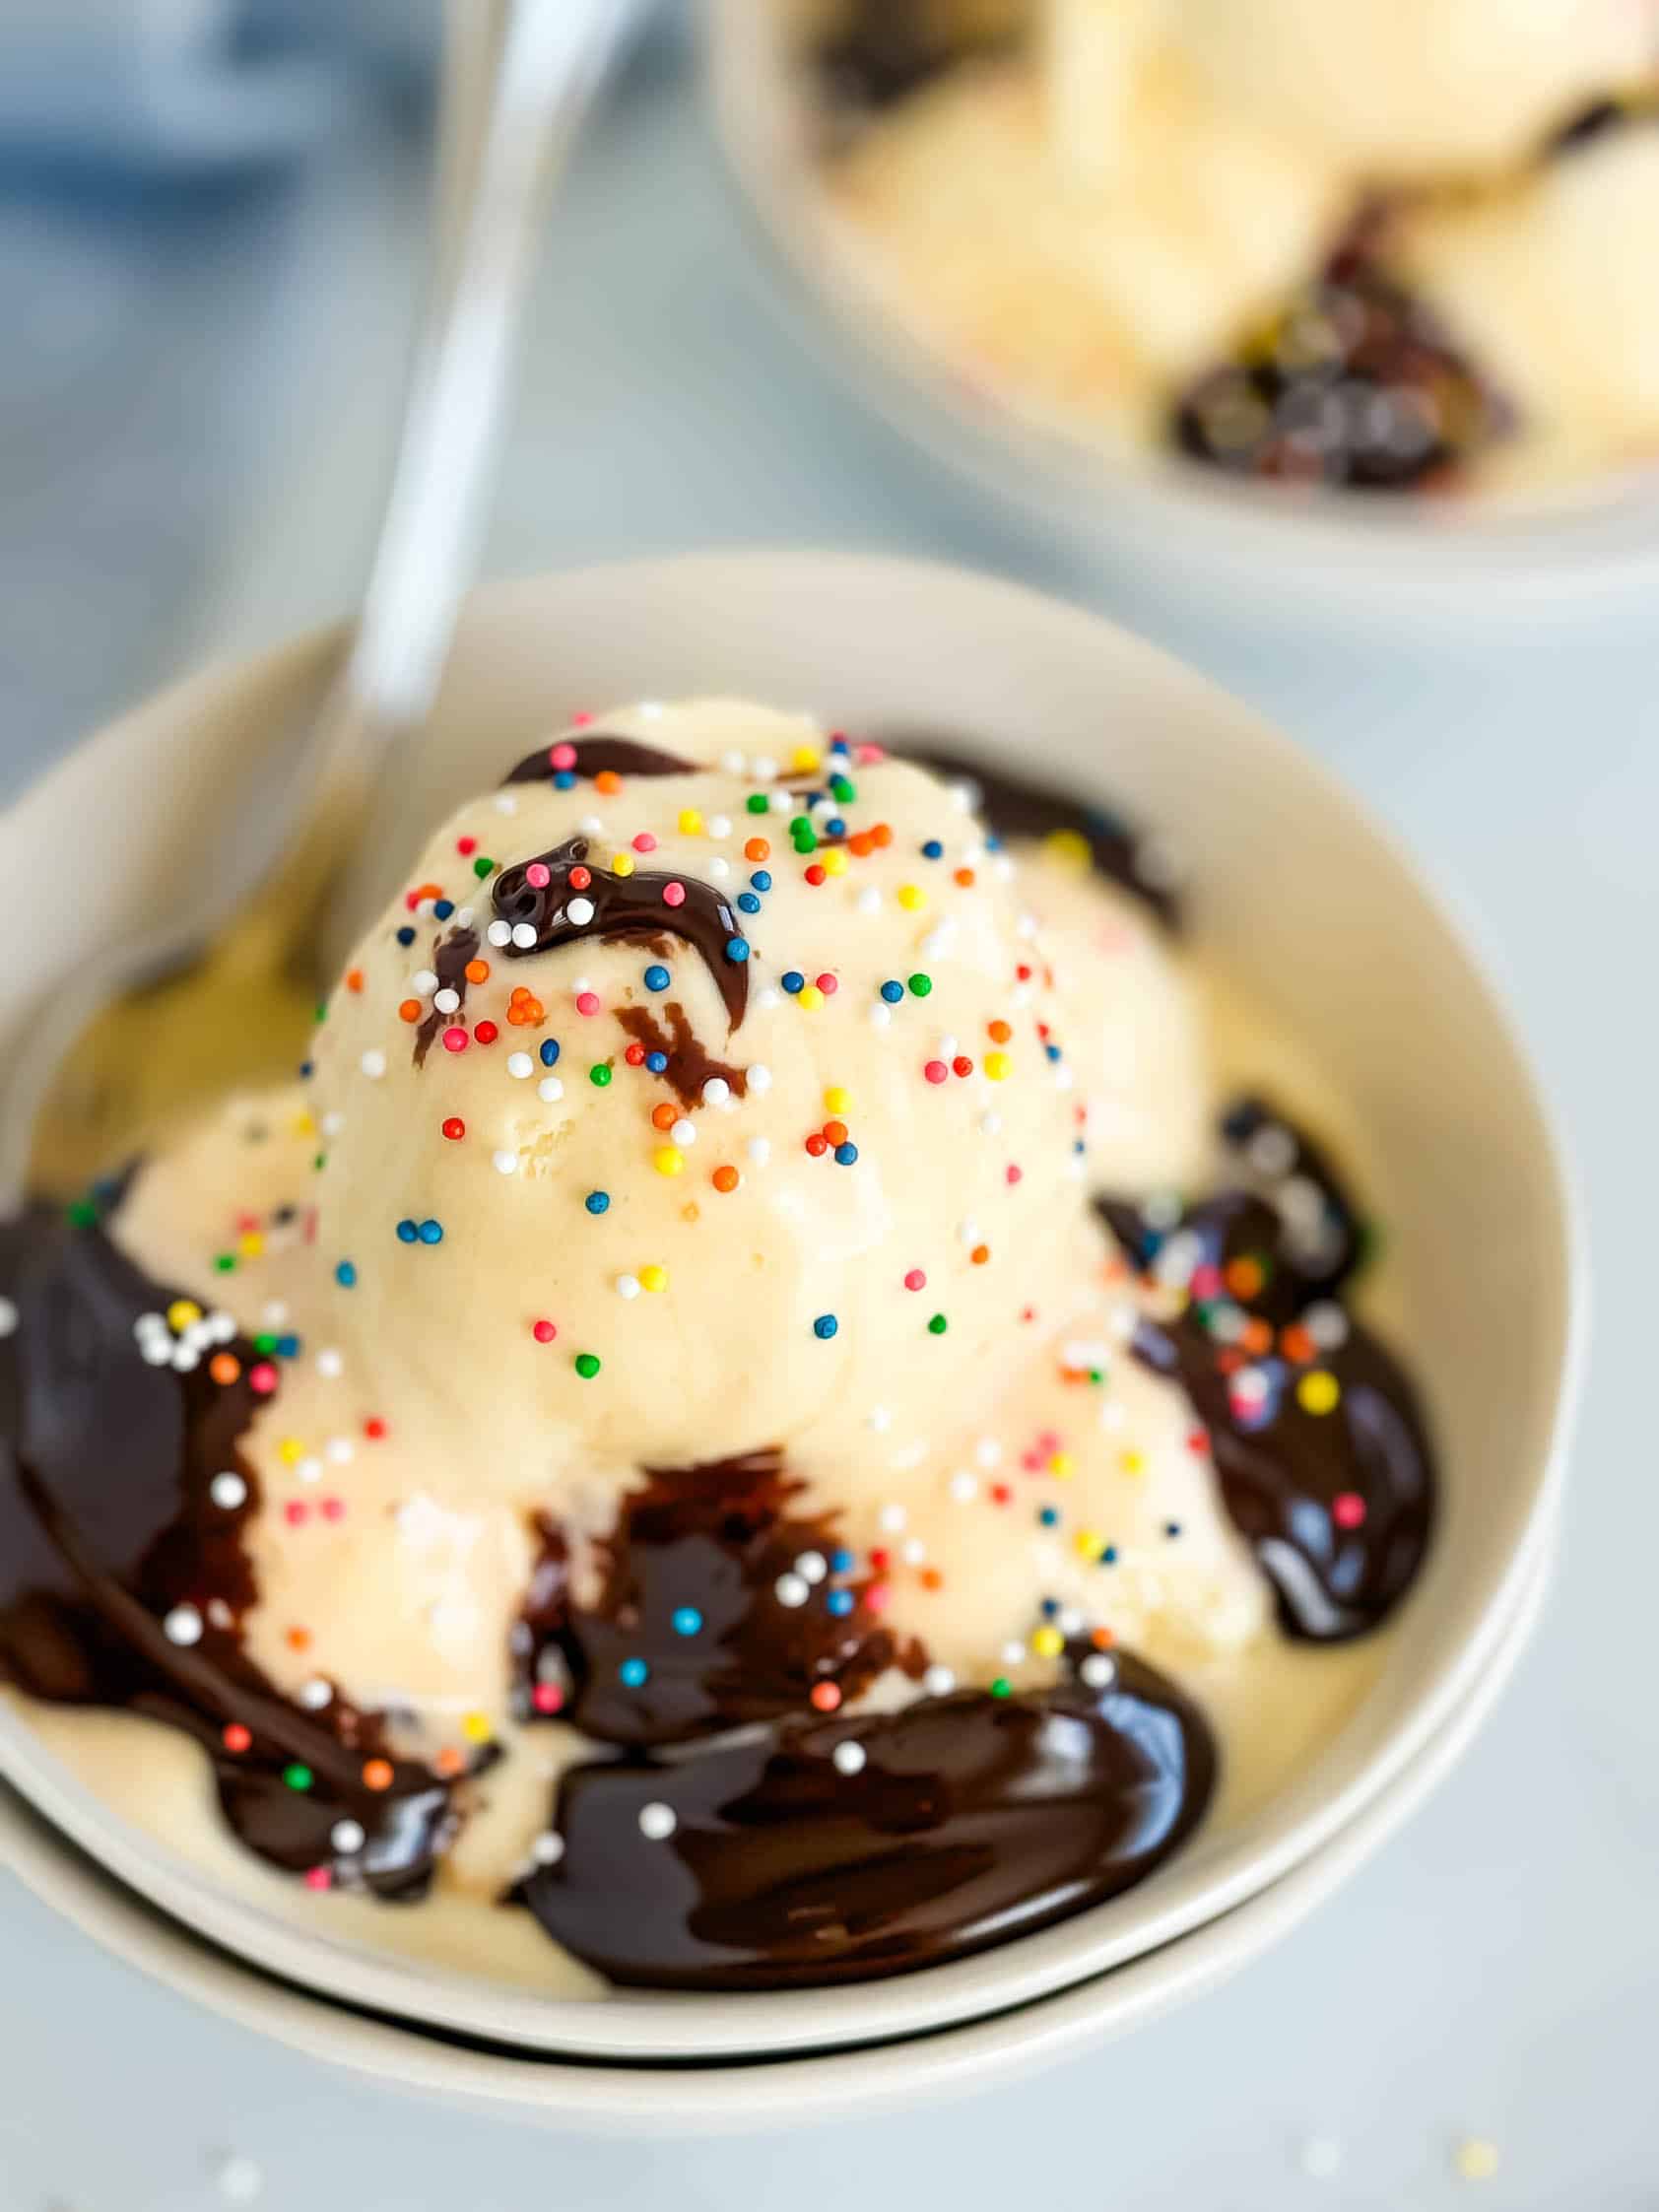 Hot fudge and vanilla ice cream in a bowl.